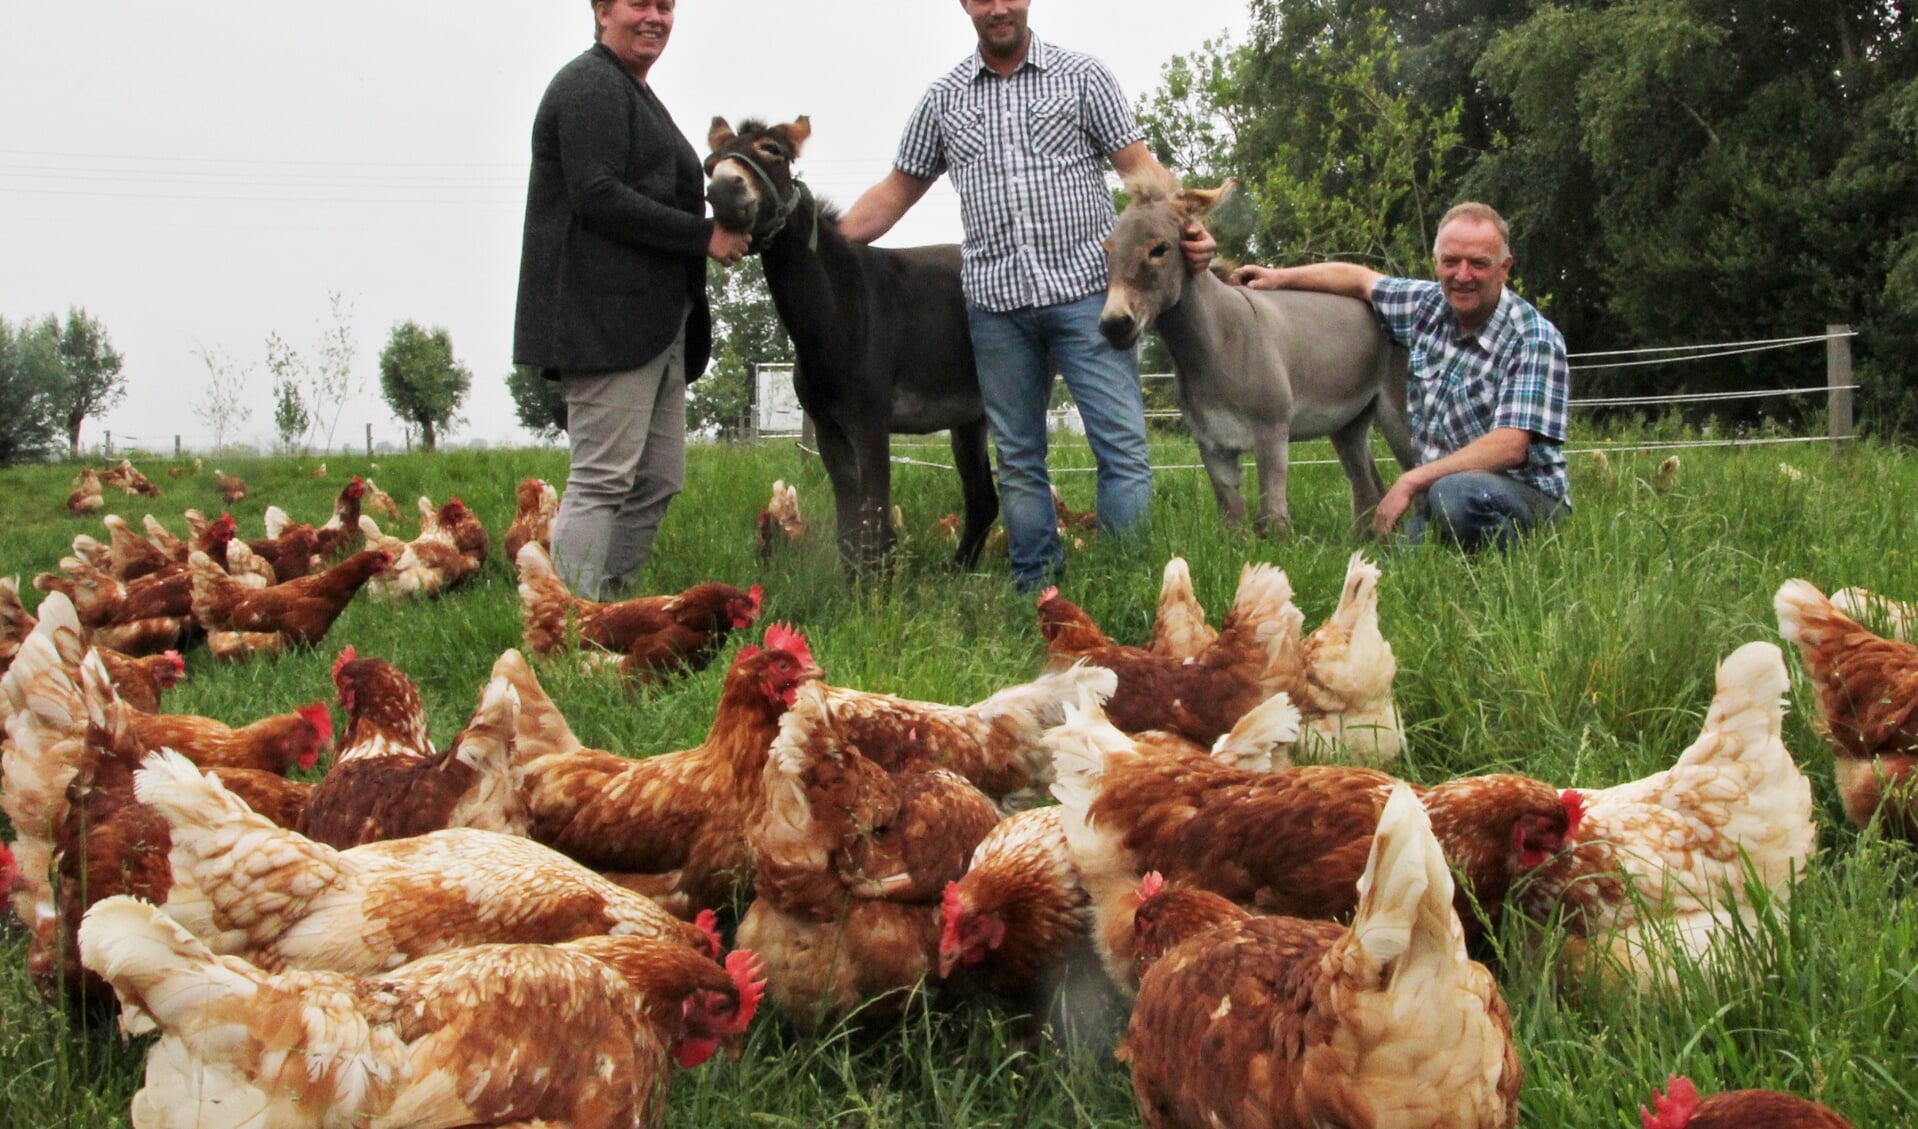 • De familie Snoek in betere tijden, toen de kippen nog gewoon buiten rondscharrelden. (archieffoto: Robert van der Hek)